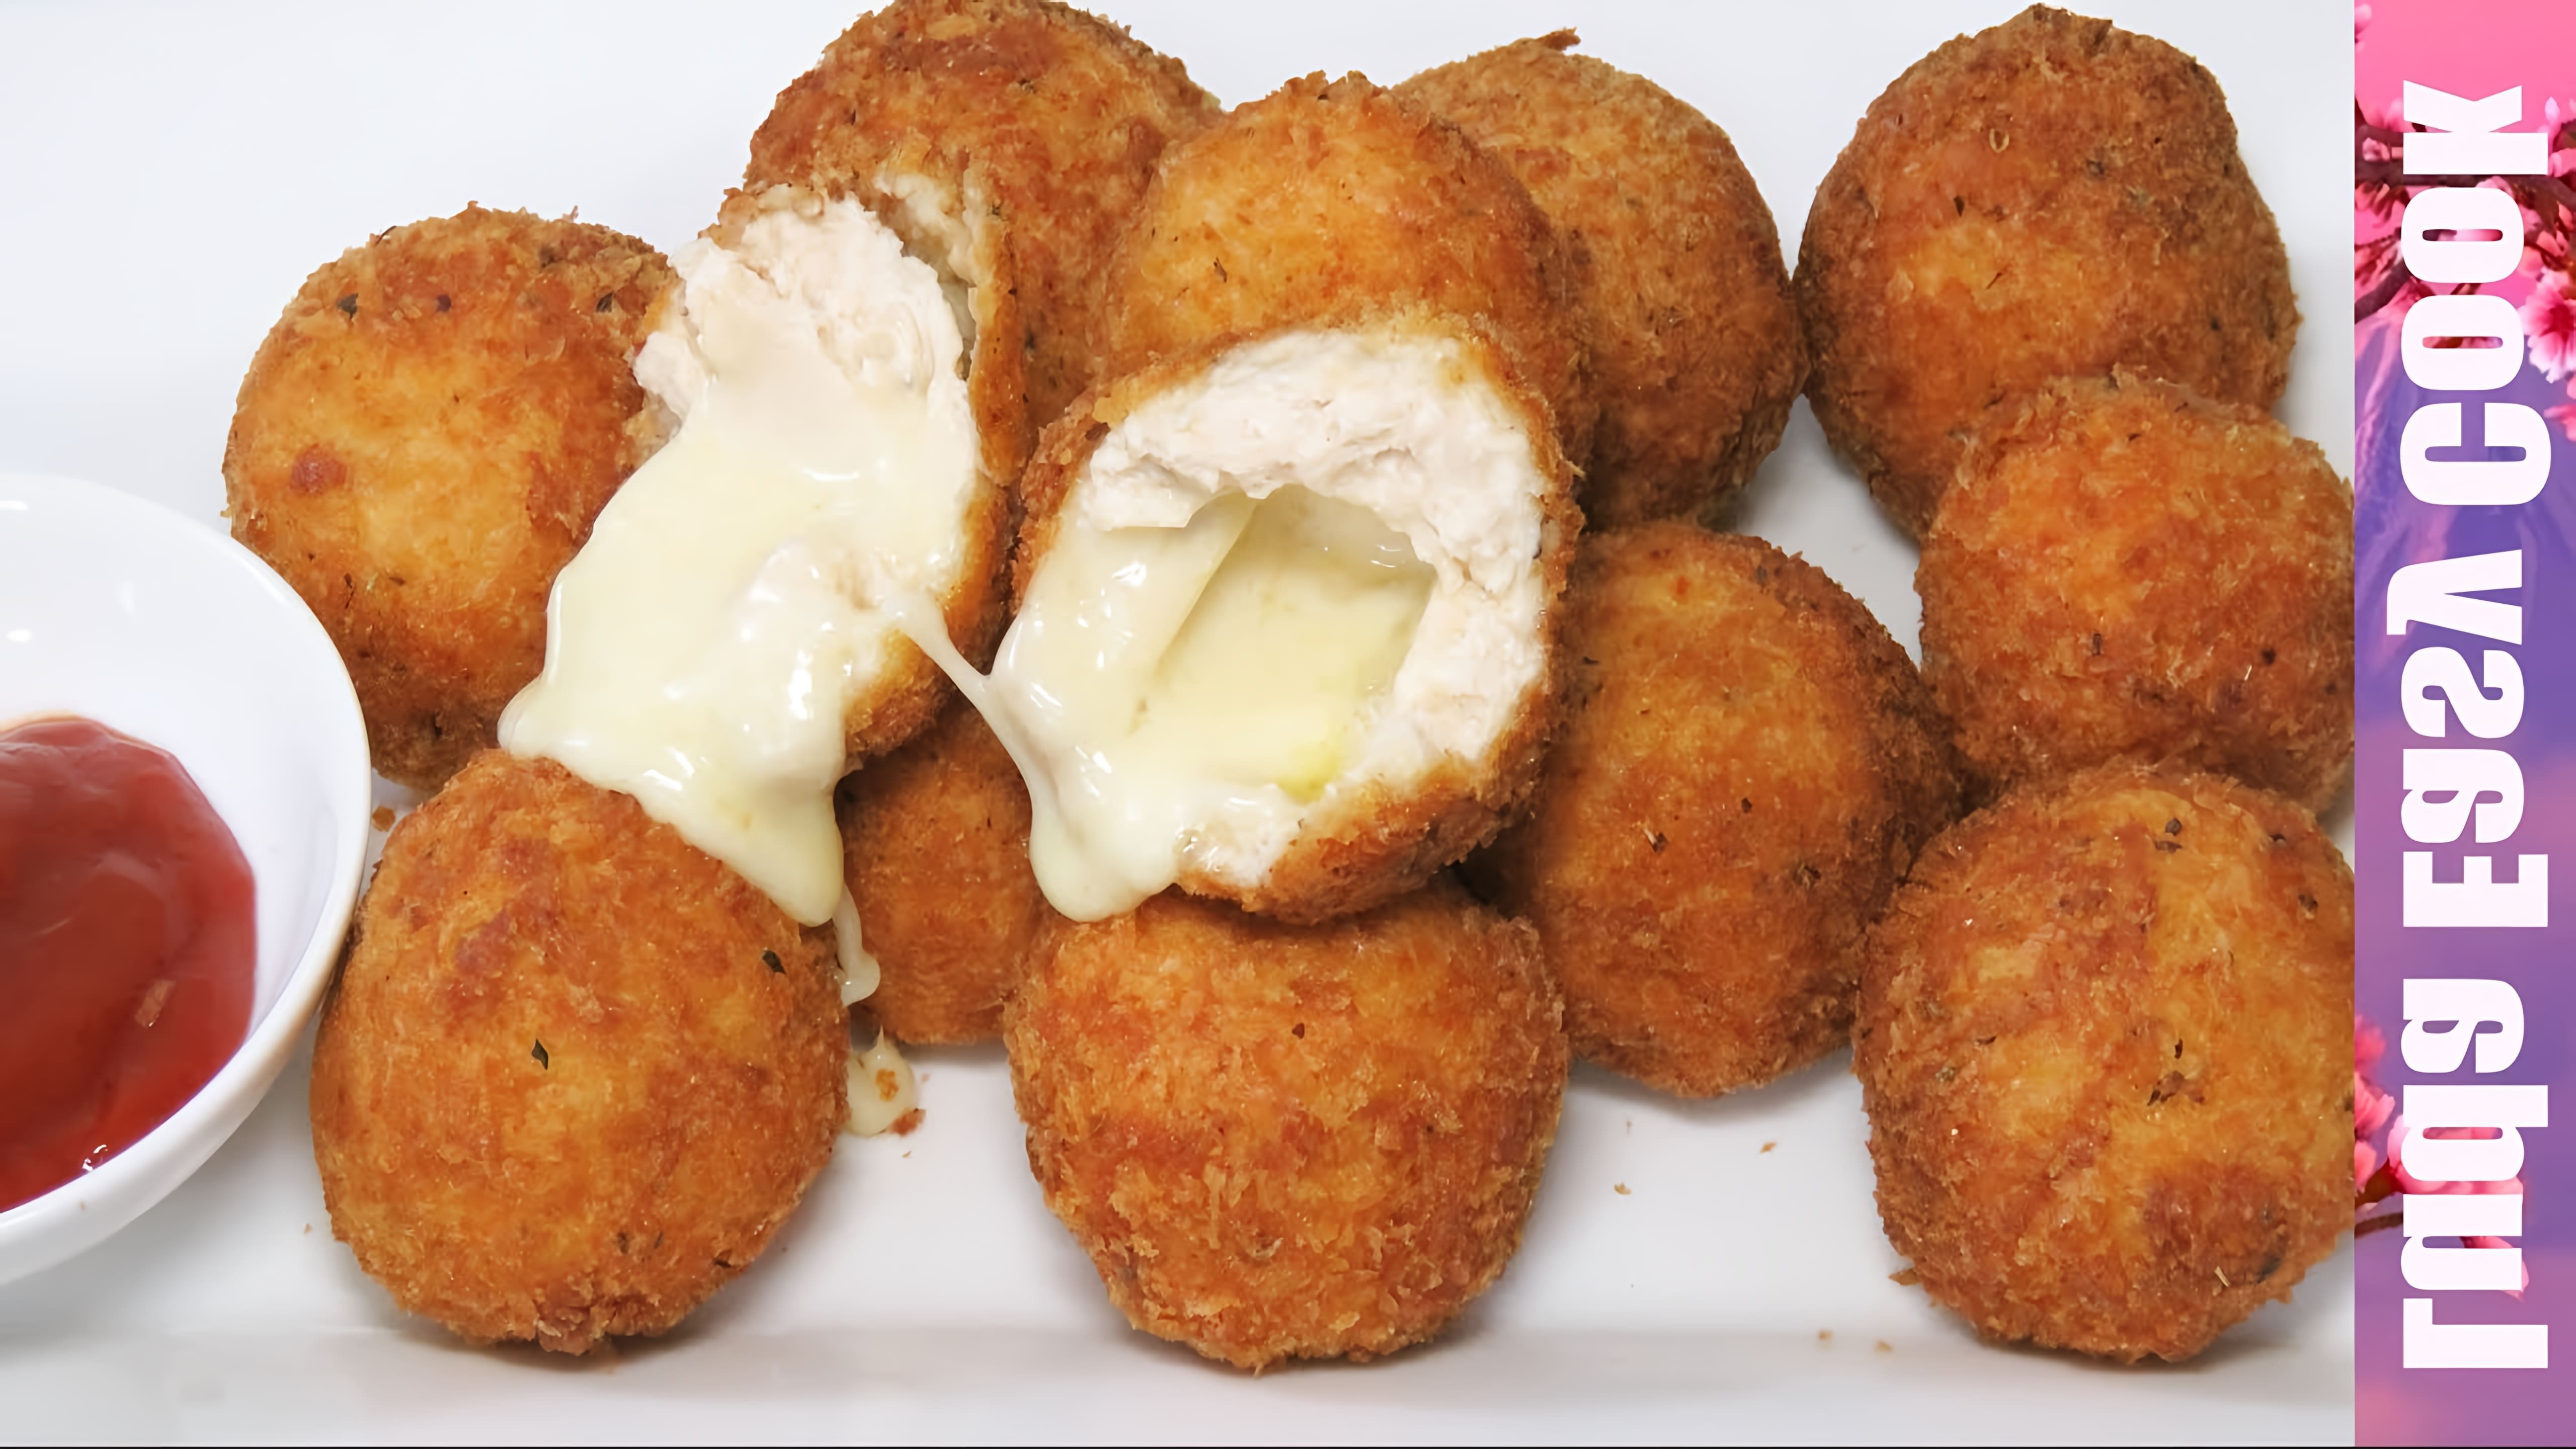 В этом видео демонстрируется рецепт приготовления вкусных куриных нагетсов с сыром